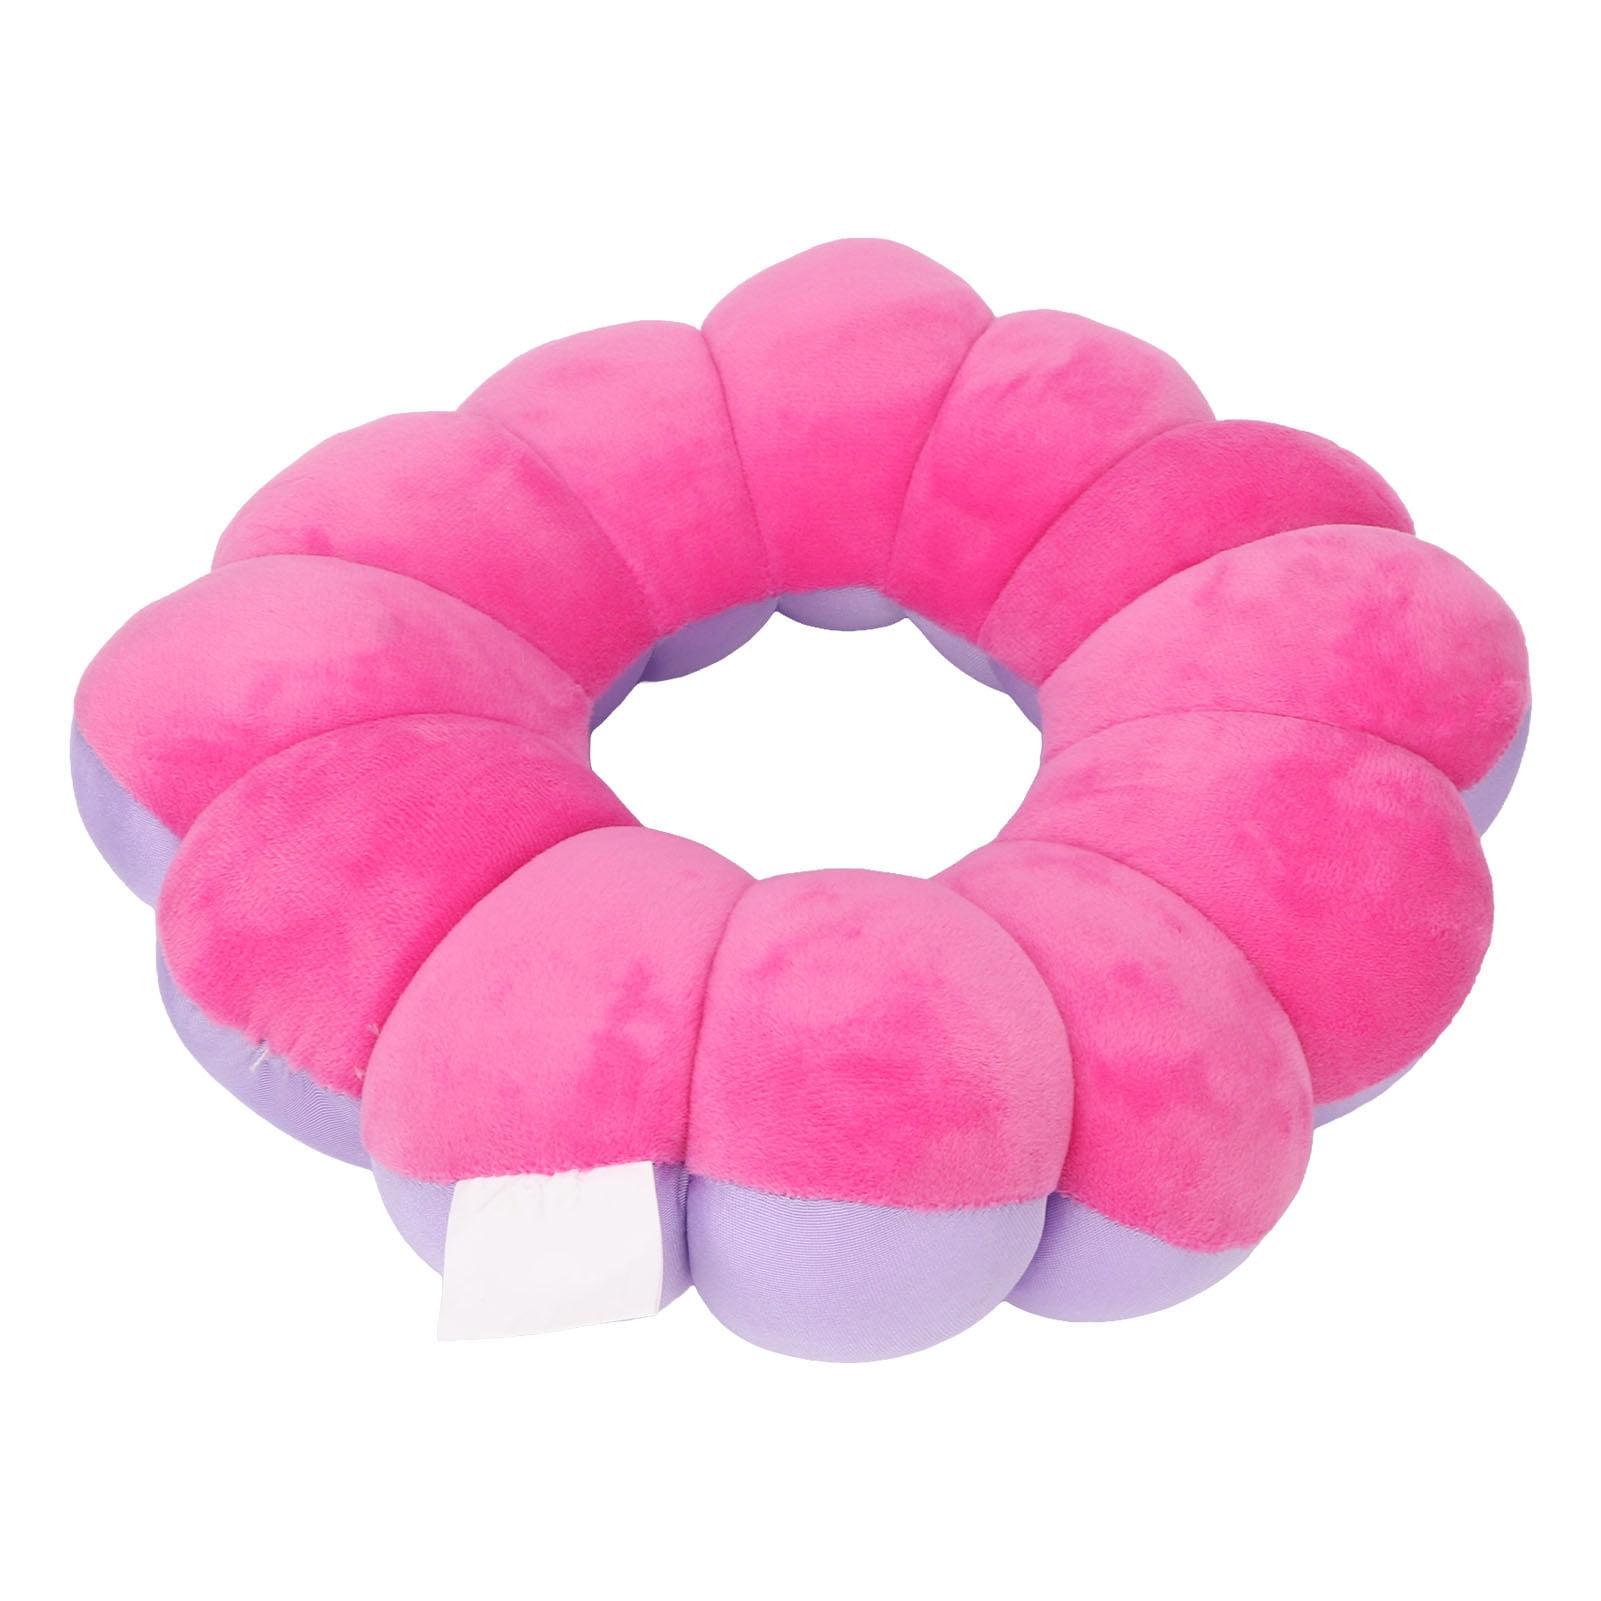 AOSSA Hemorrhoid Cushion Donut Pillow Doughnut Bed Sore Butt